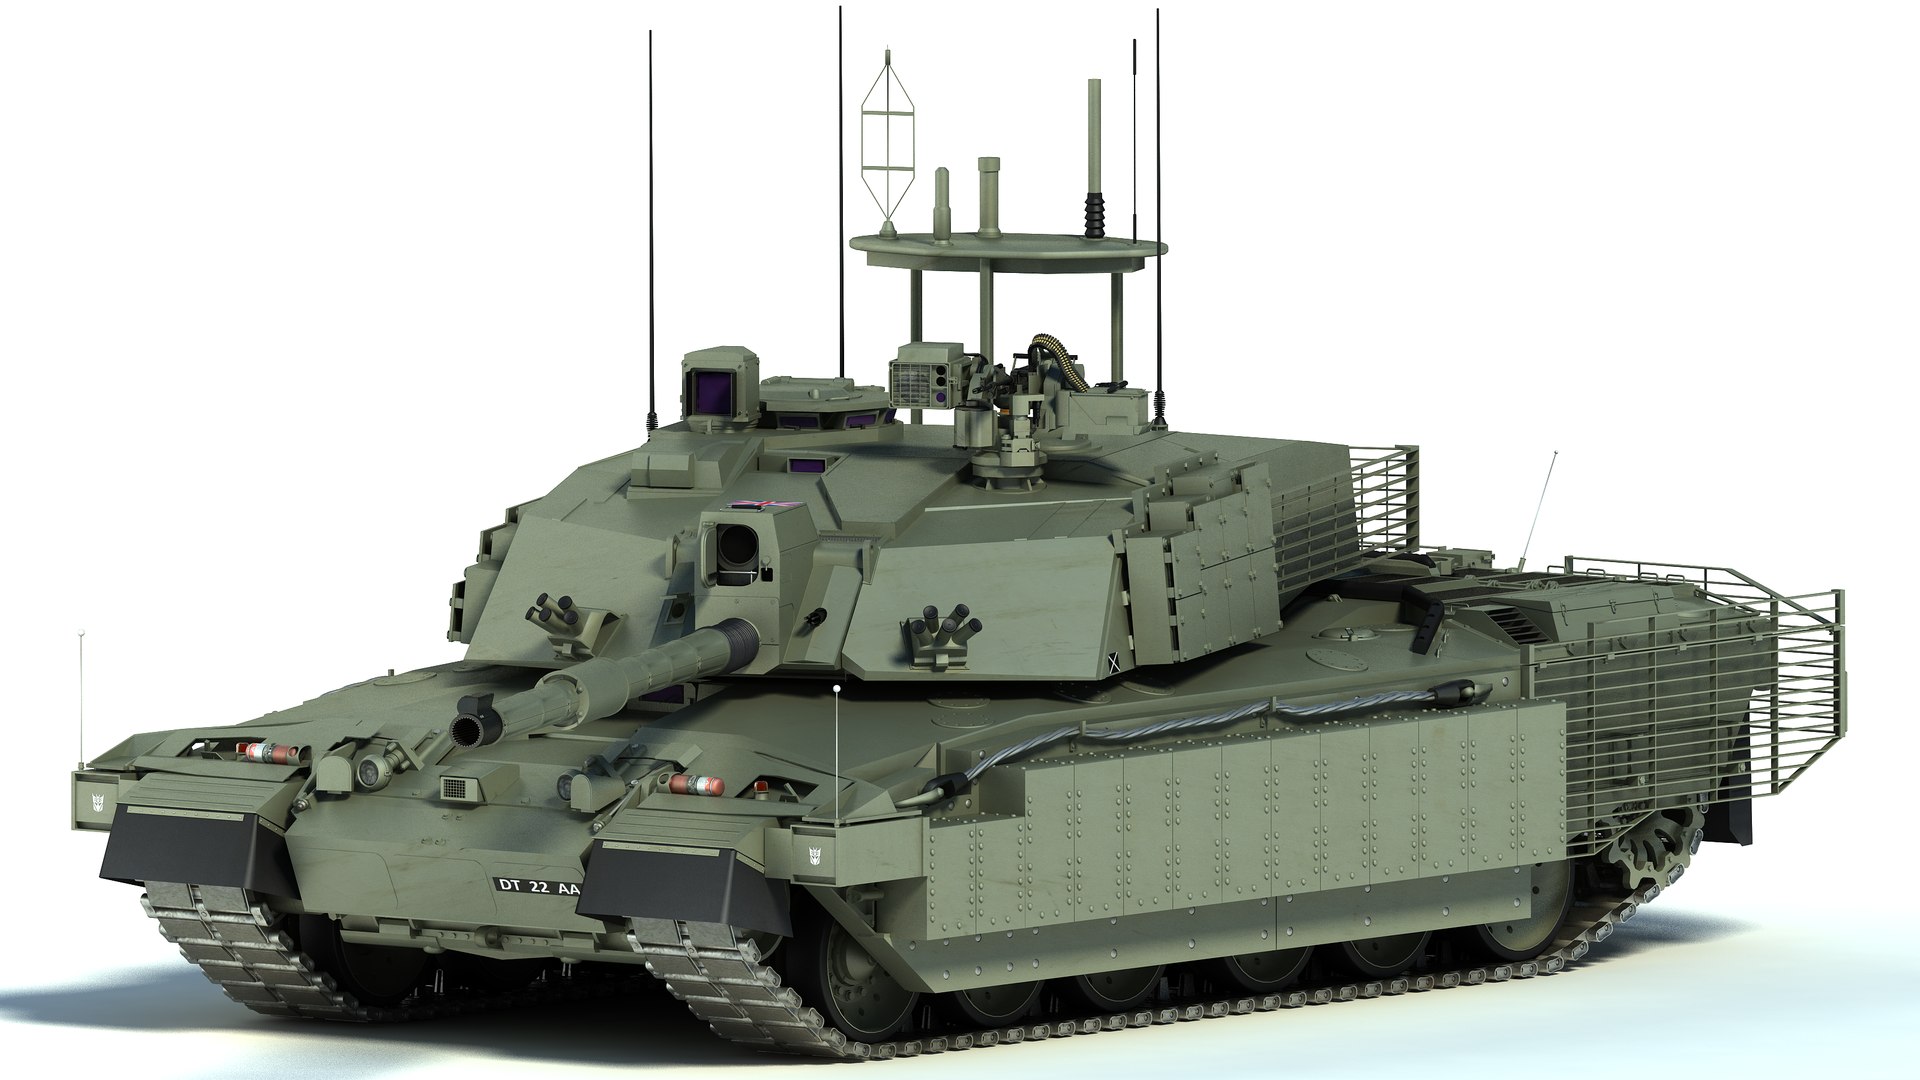 CAT-UXO - Challenger 2 main battle tank mbt